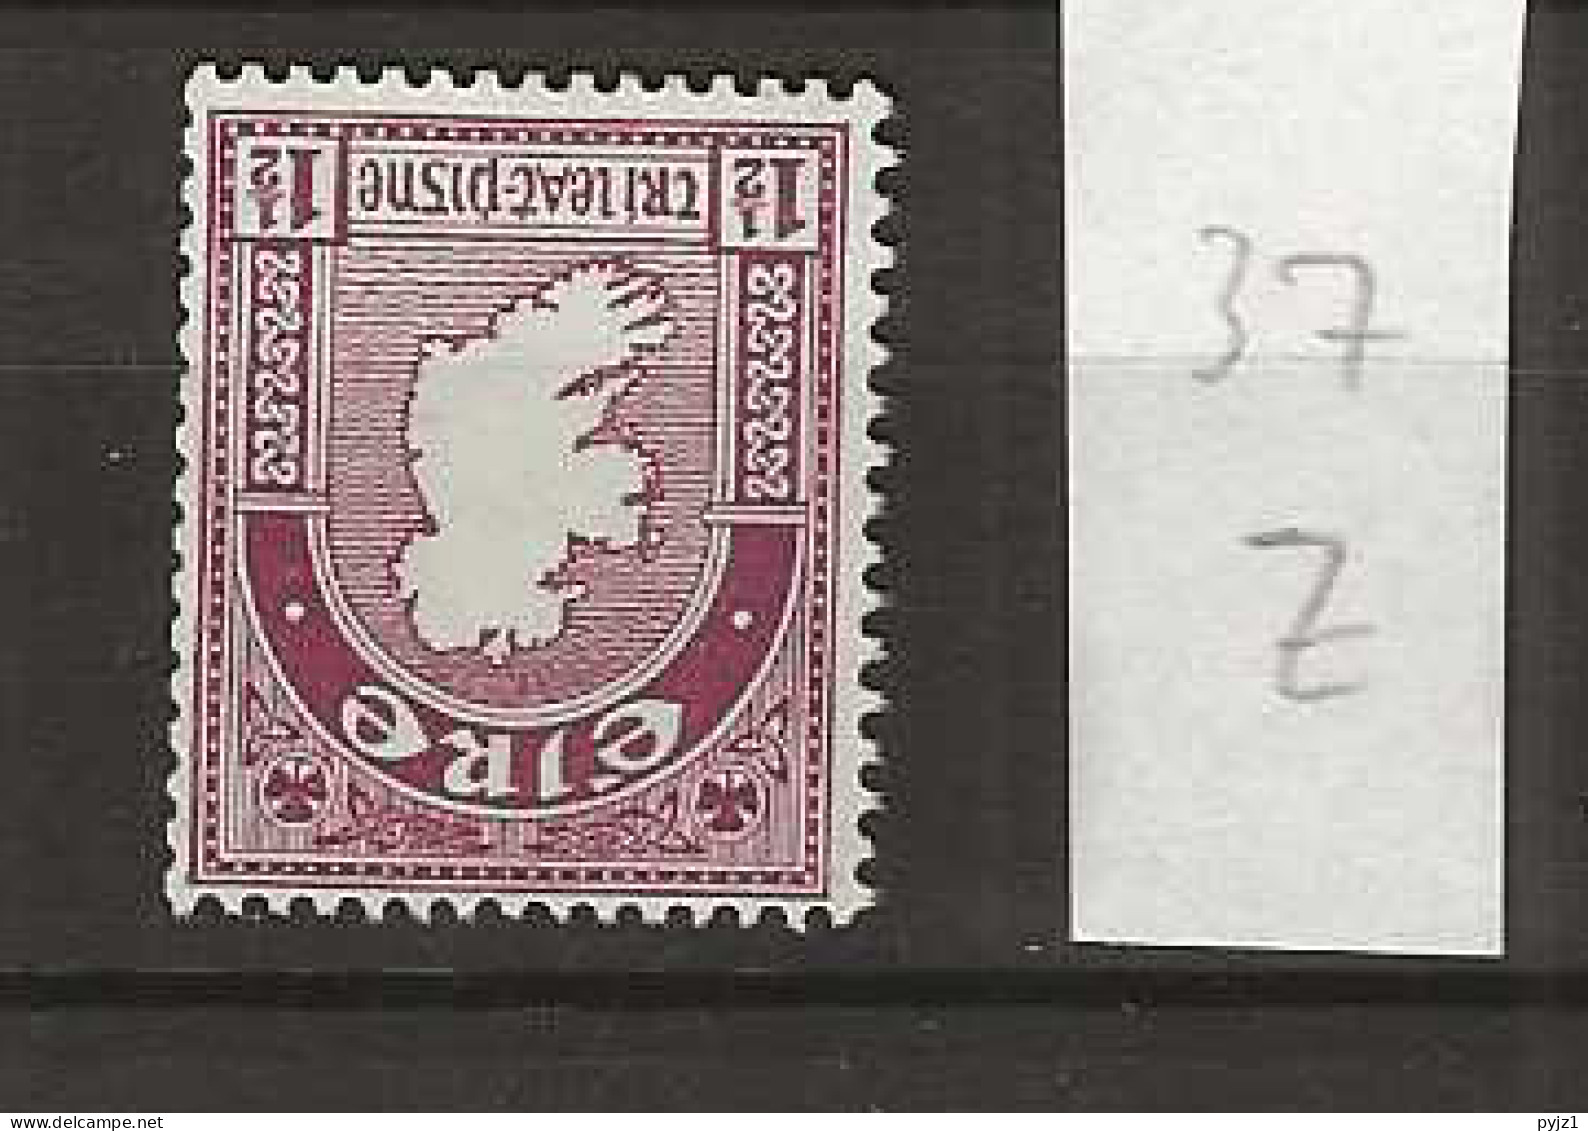 1940 MNH Ireland  Mi 73 Z Inverted Watermark, Postfris** - Ungebraucht